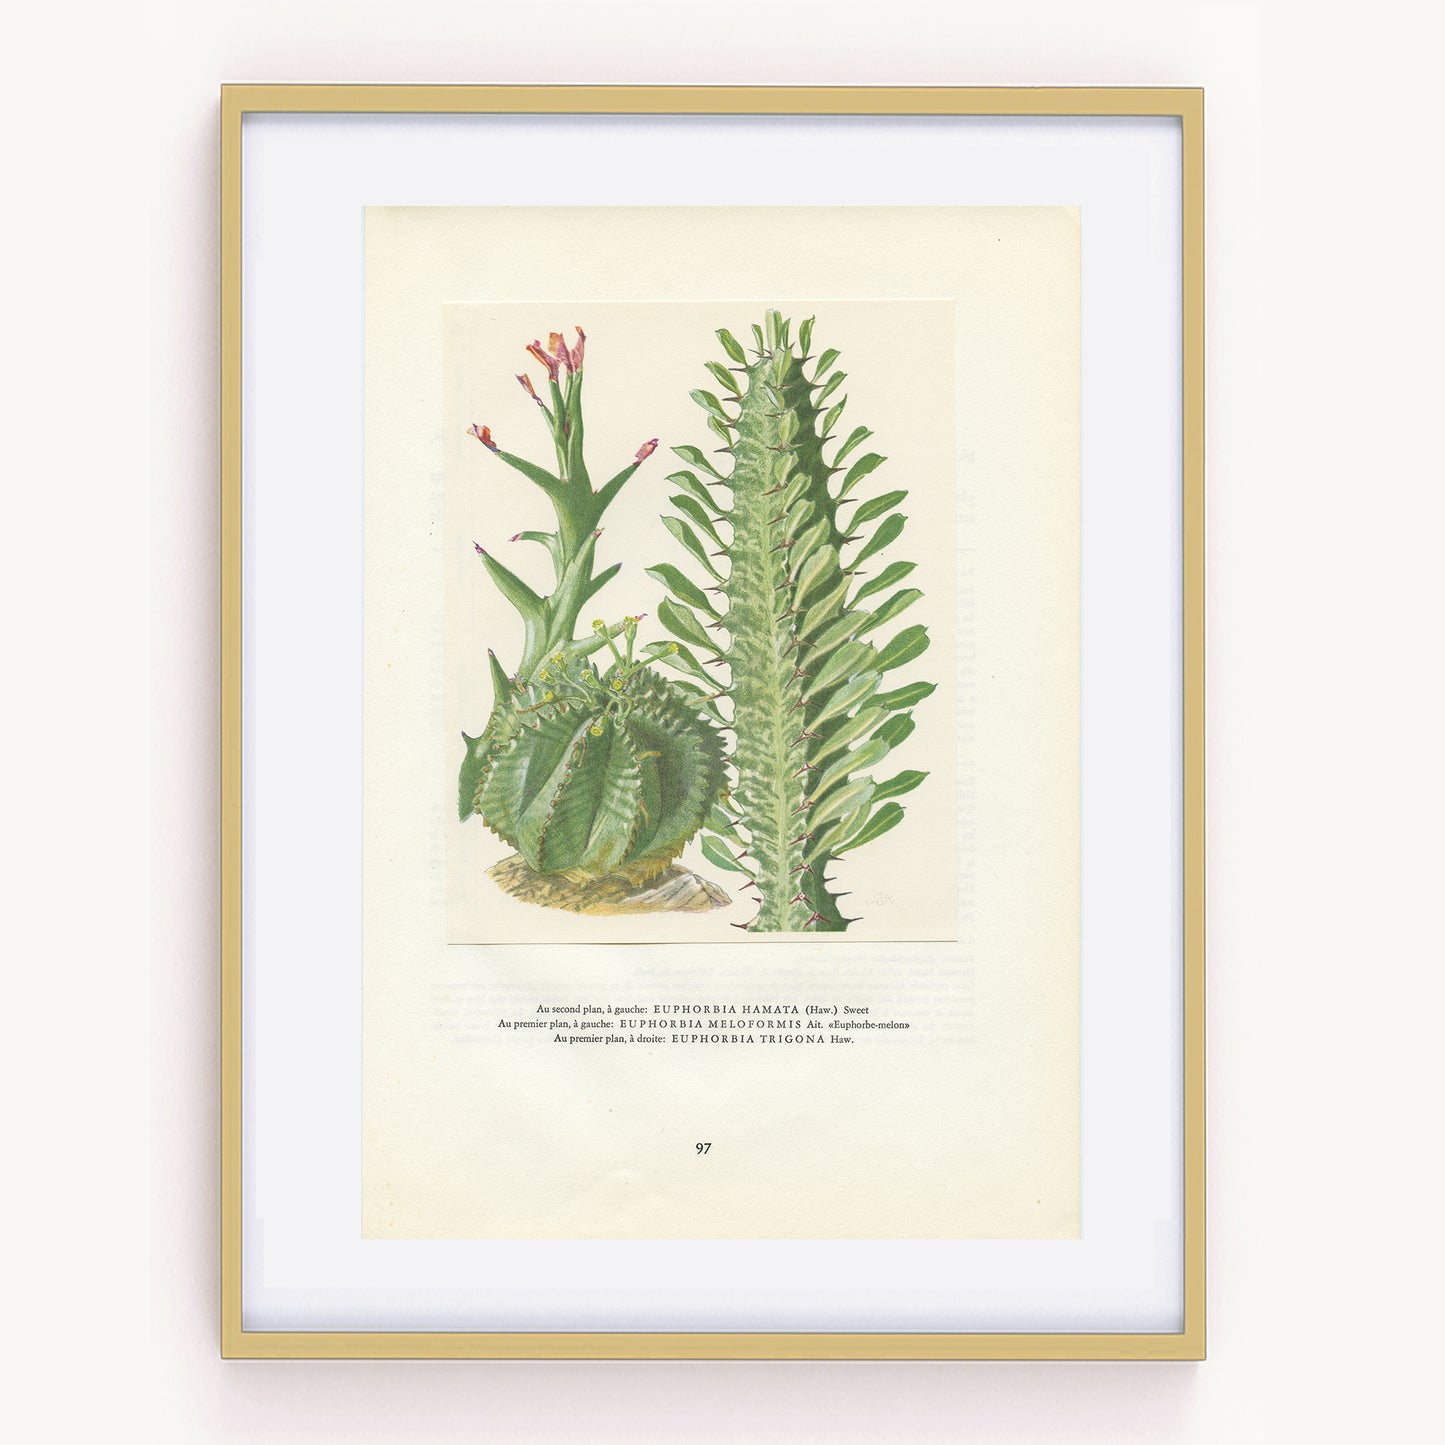 1958 Illustration vintage de plantes grasses Euphorbia Bupleurifolia, Neriifolia, Obesa